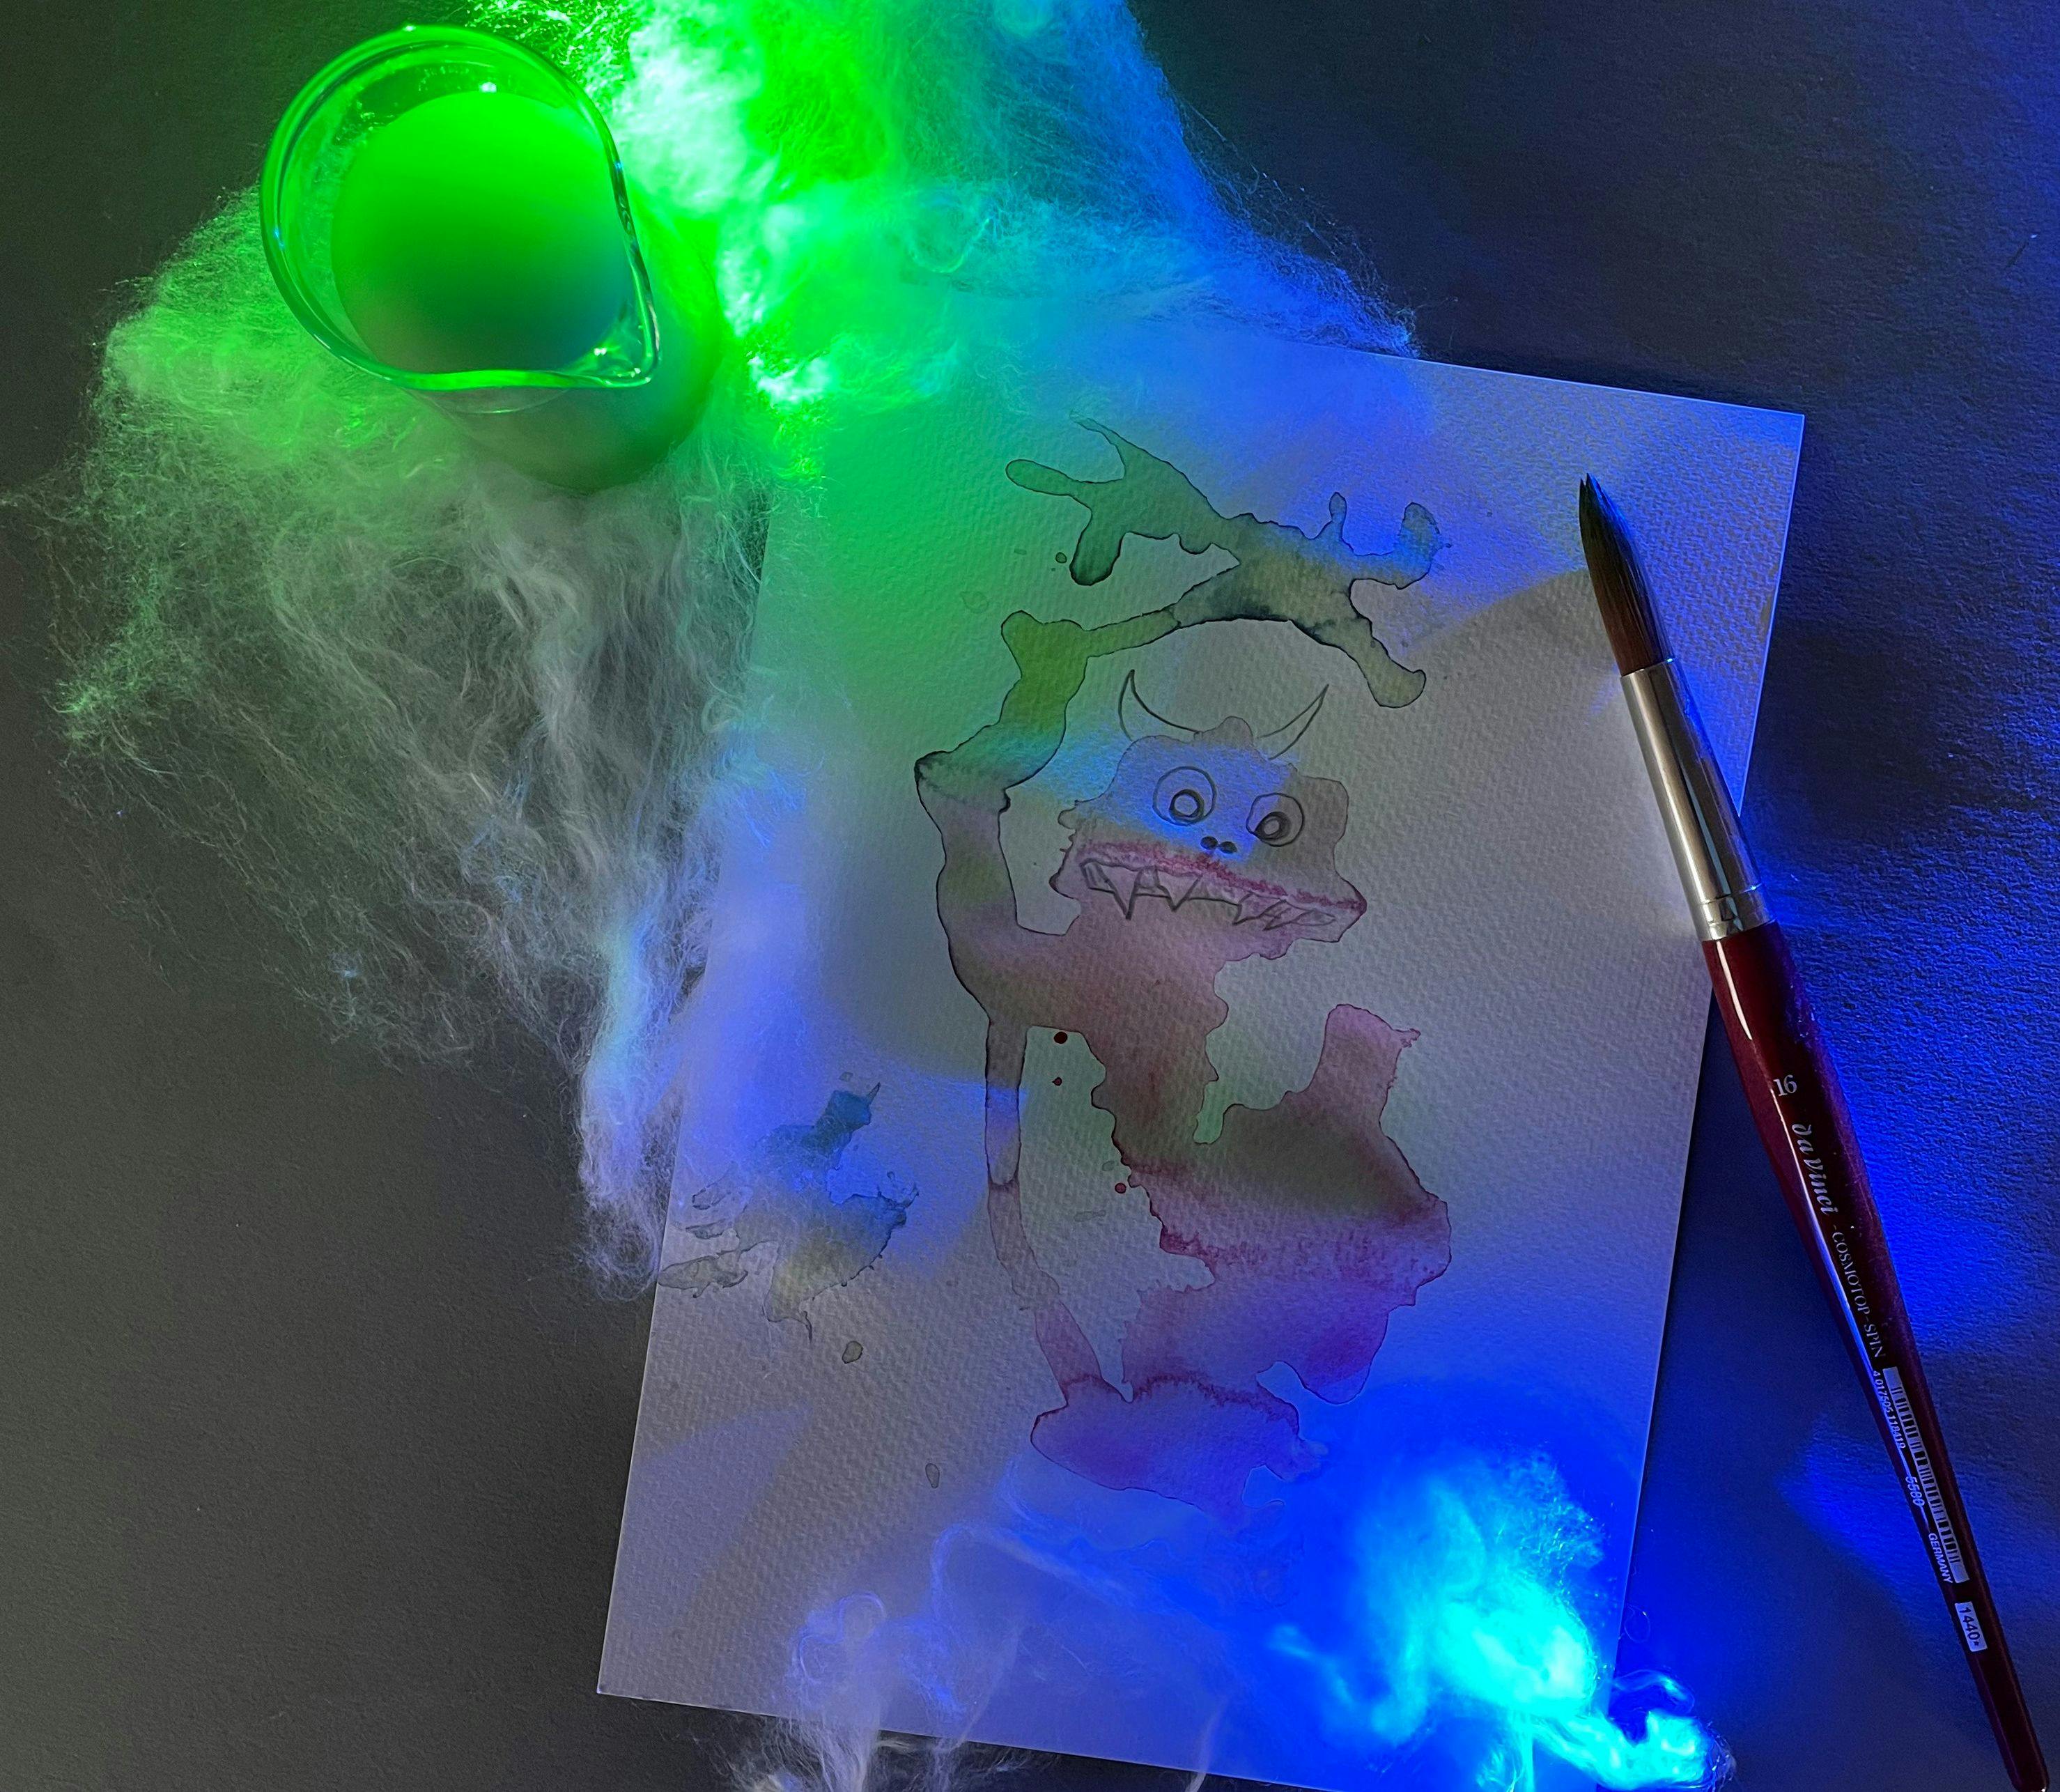 Gröna och blåa lampor lyser över ett akvarellpapper med en fläck som ser ut som ett monster